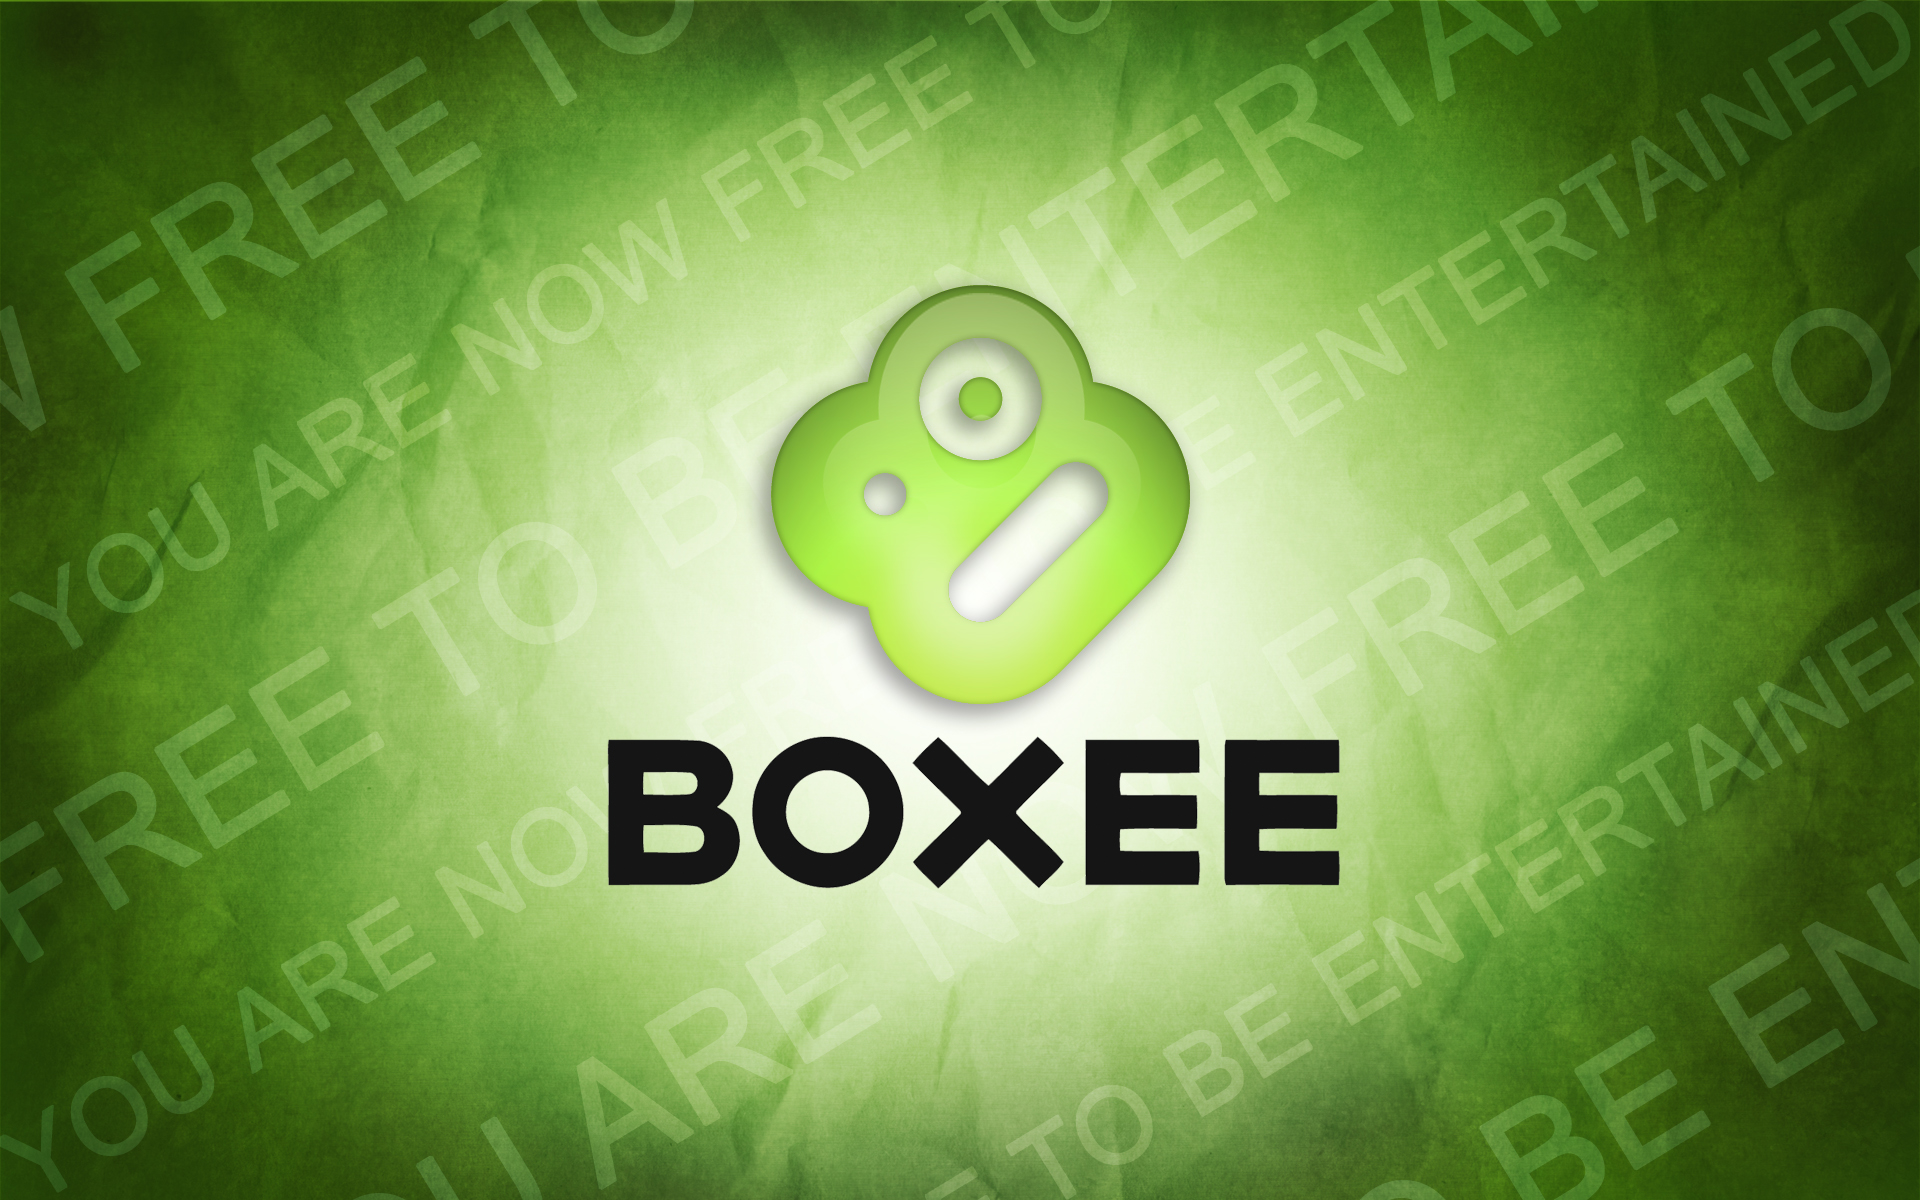 Boxee Logo photo - 1